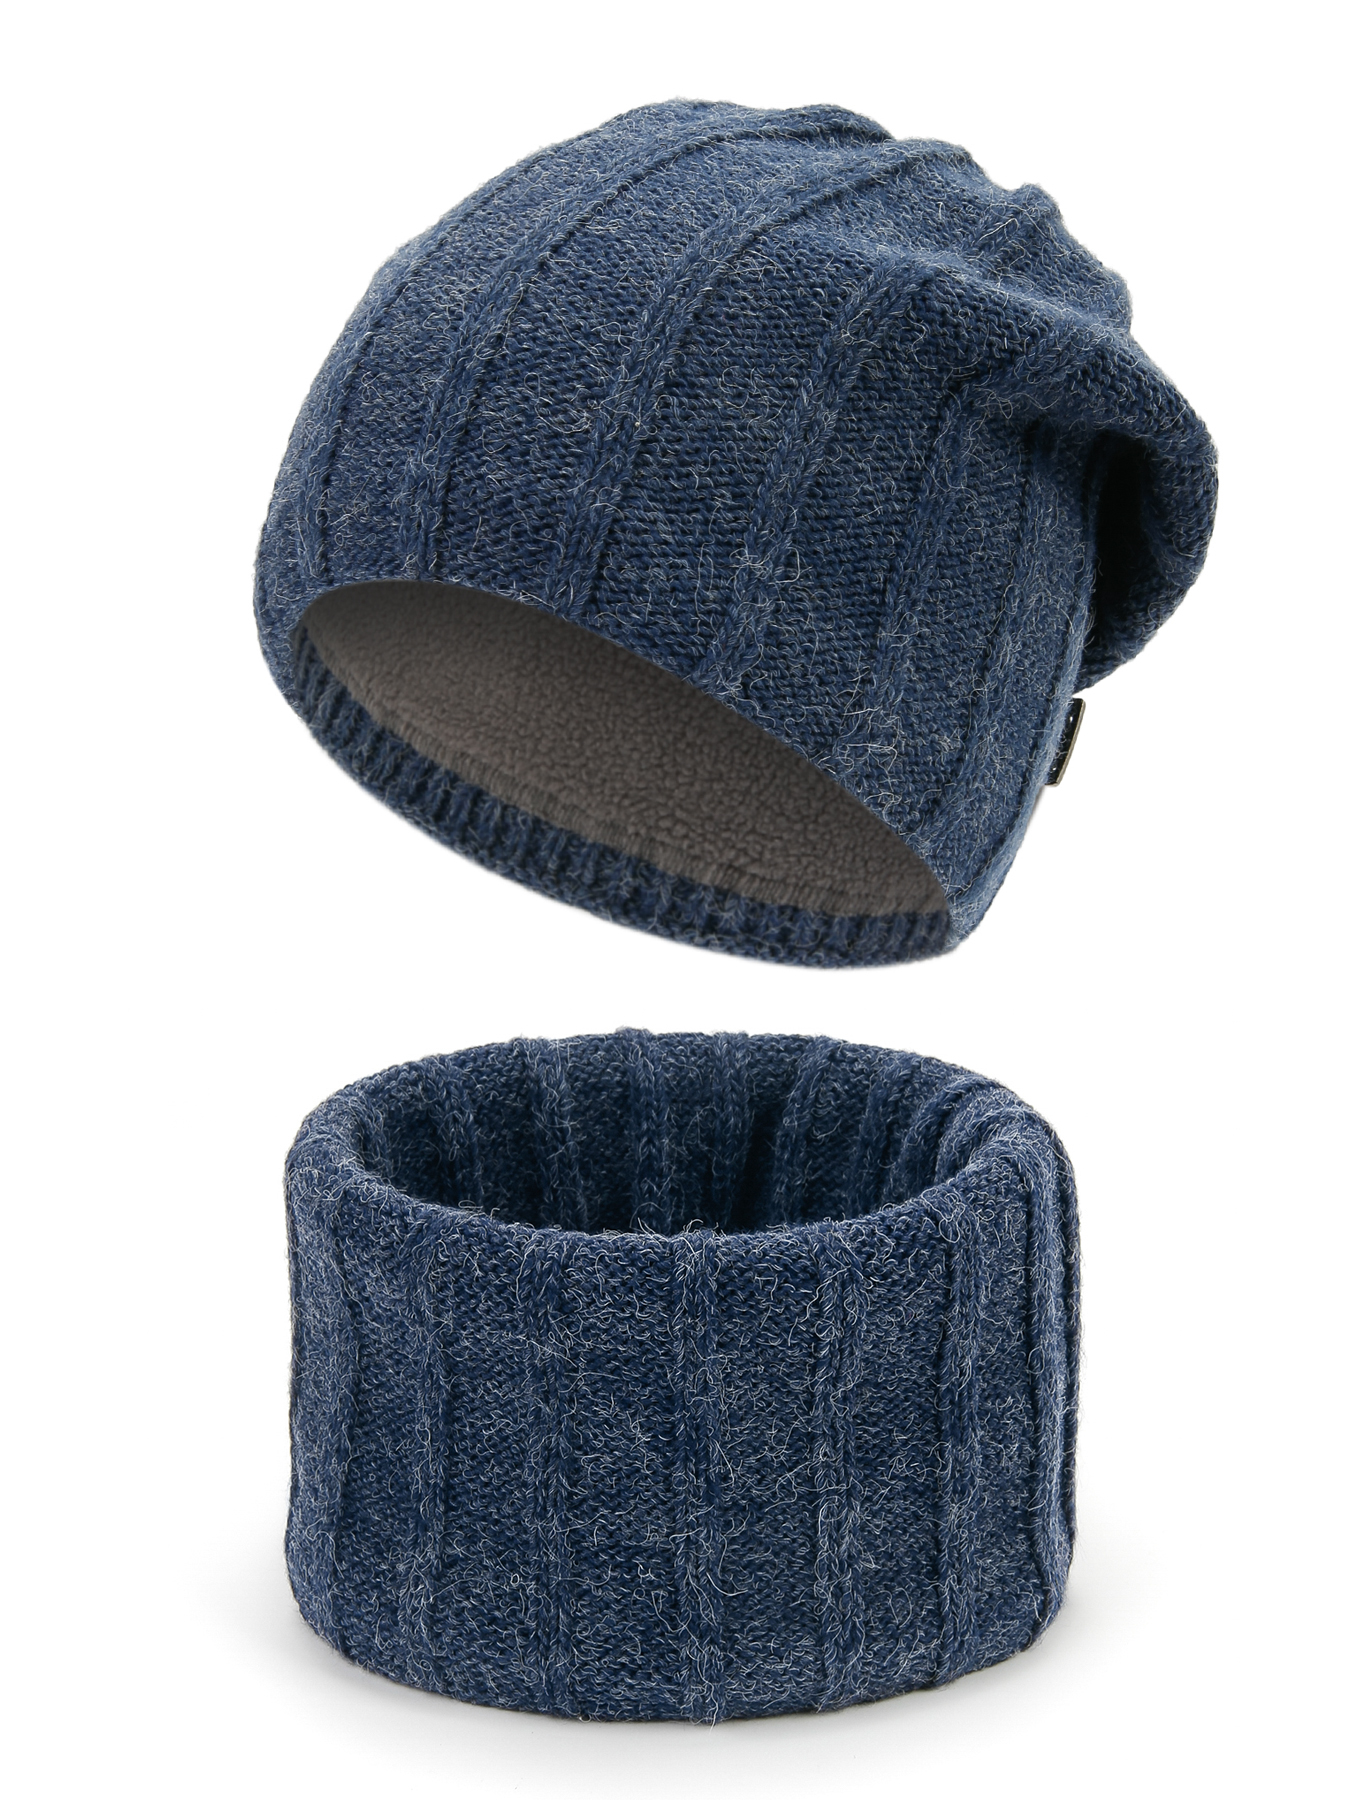 Комплект шапка и снуд мужской Maxval KoM200117, светлый джинс, р.57-59